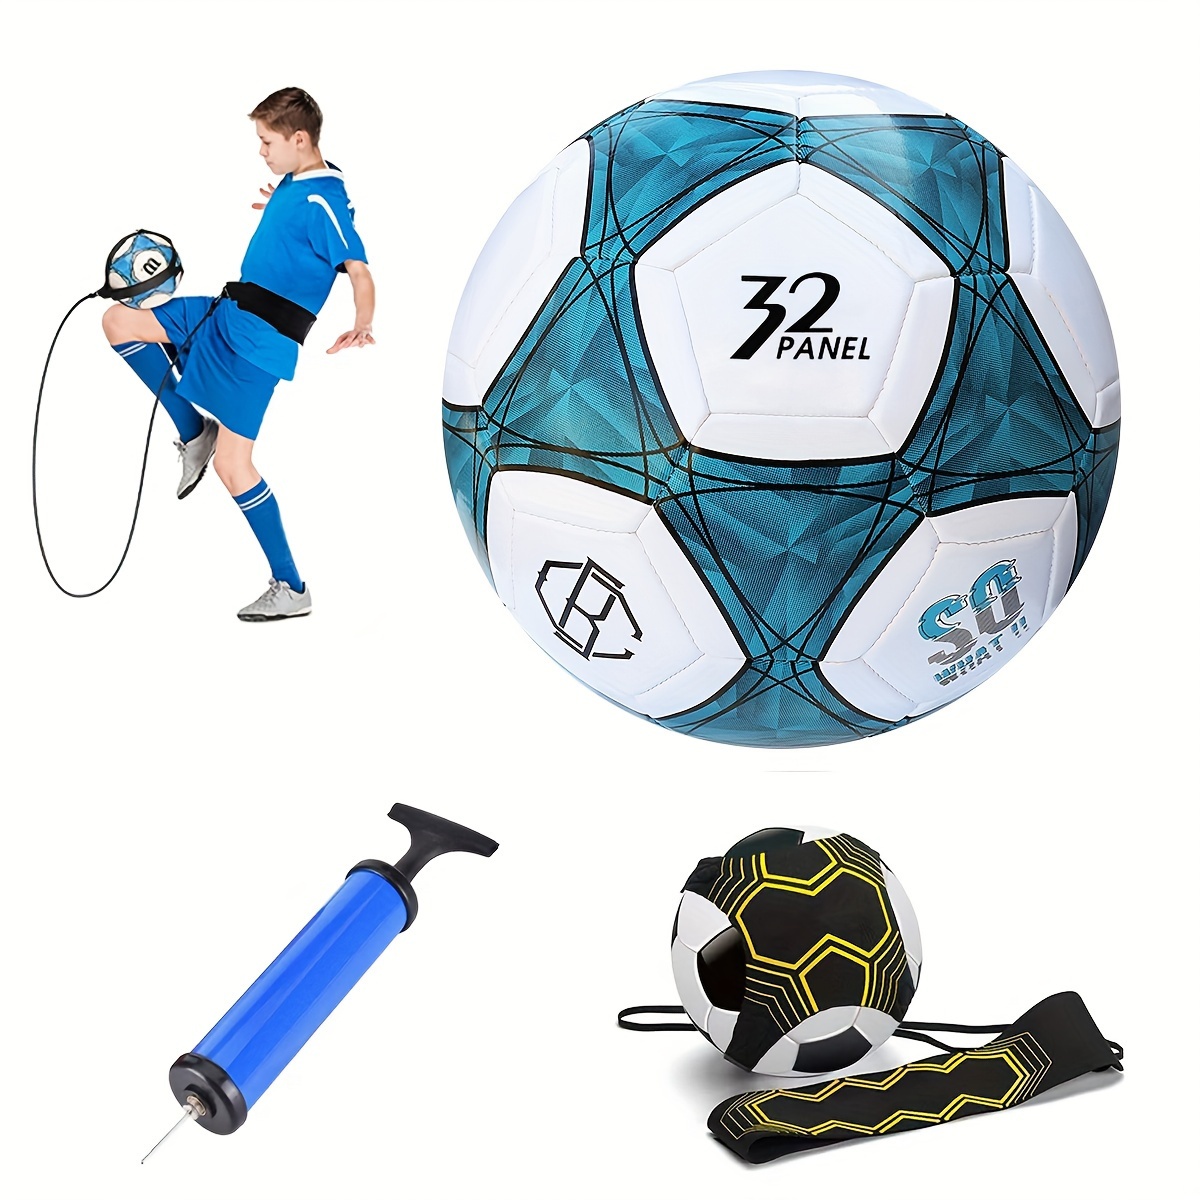 Bola de fútbol talla 5 pelotas de entrenamiento fútbol para niñas niños